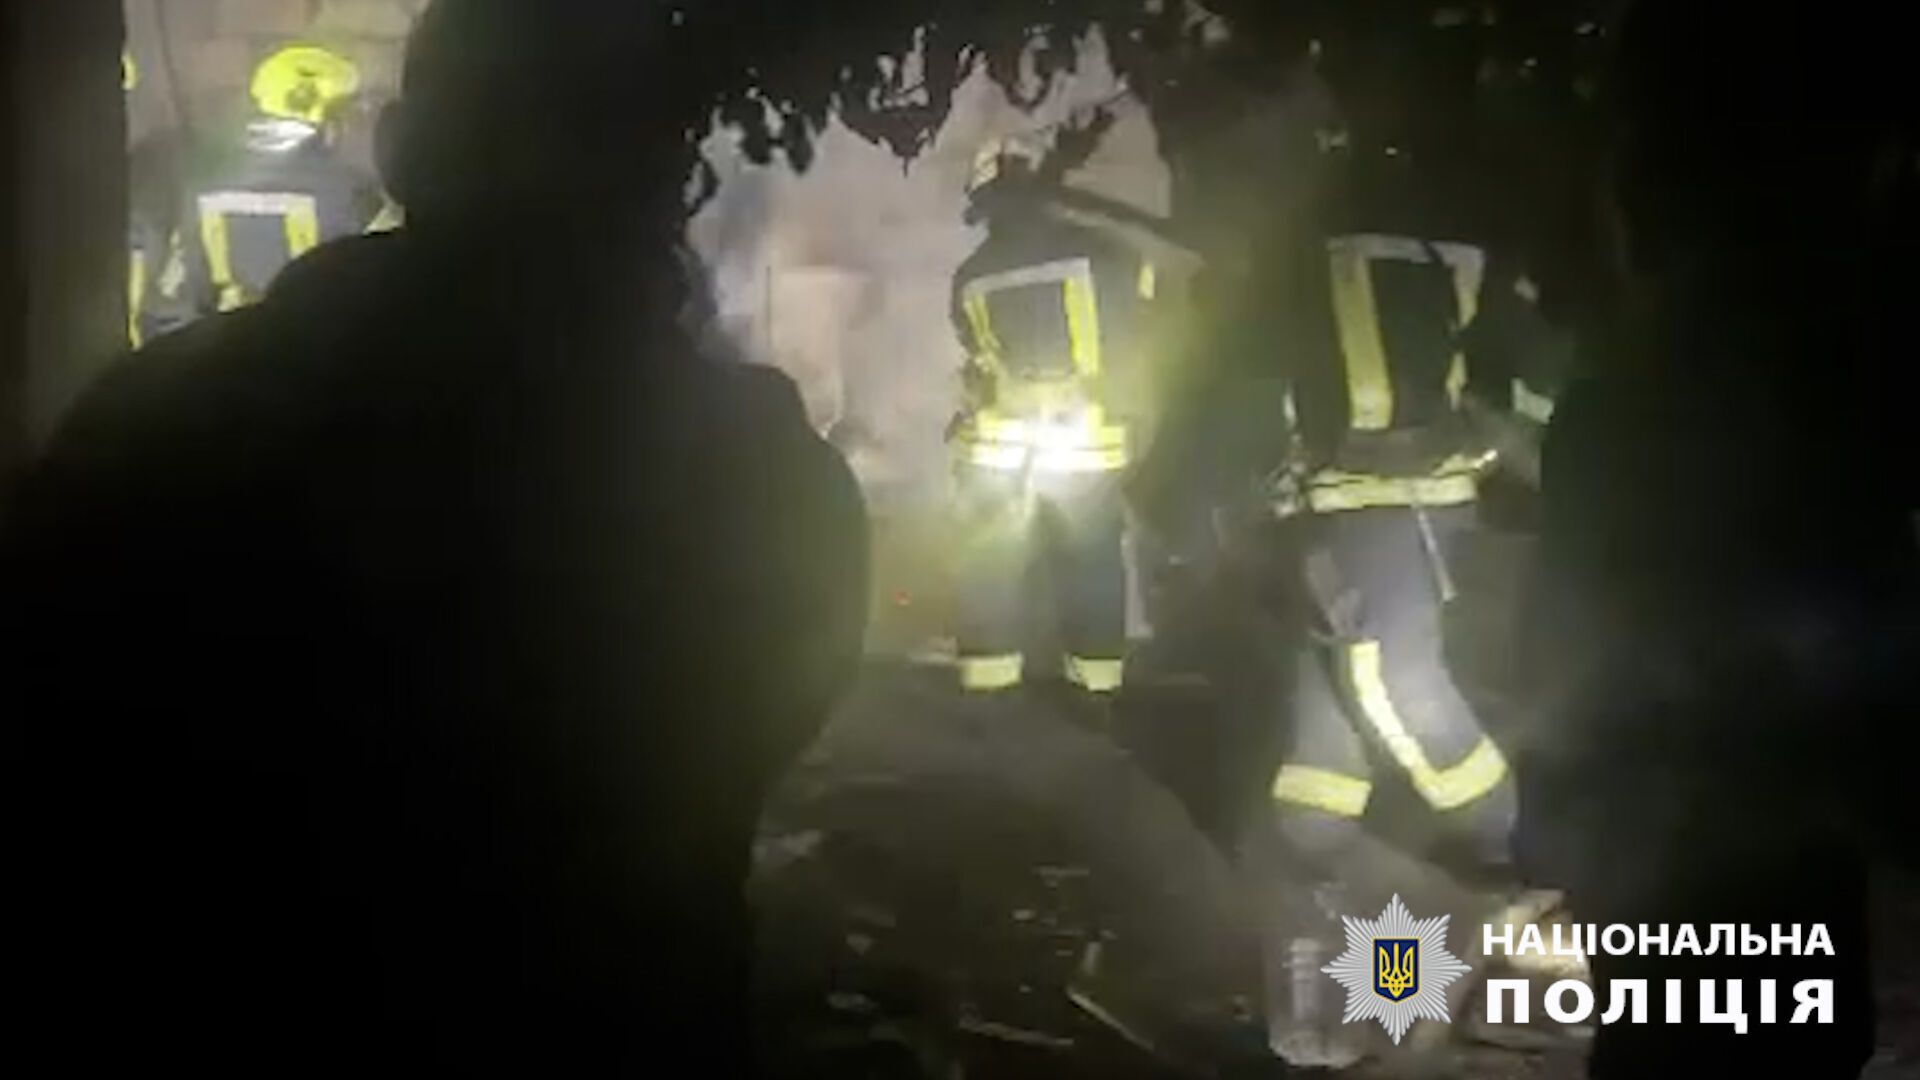 В Киевской области полицейские спасли из горящего дома семерых человек. Подробности и видео